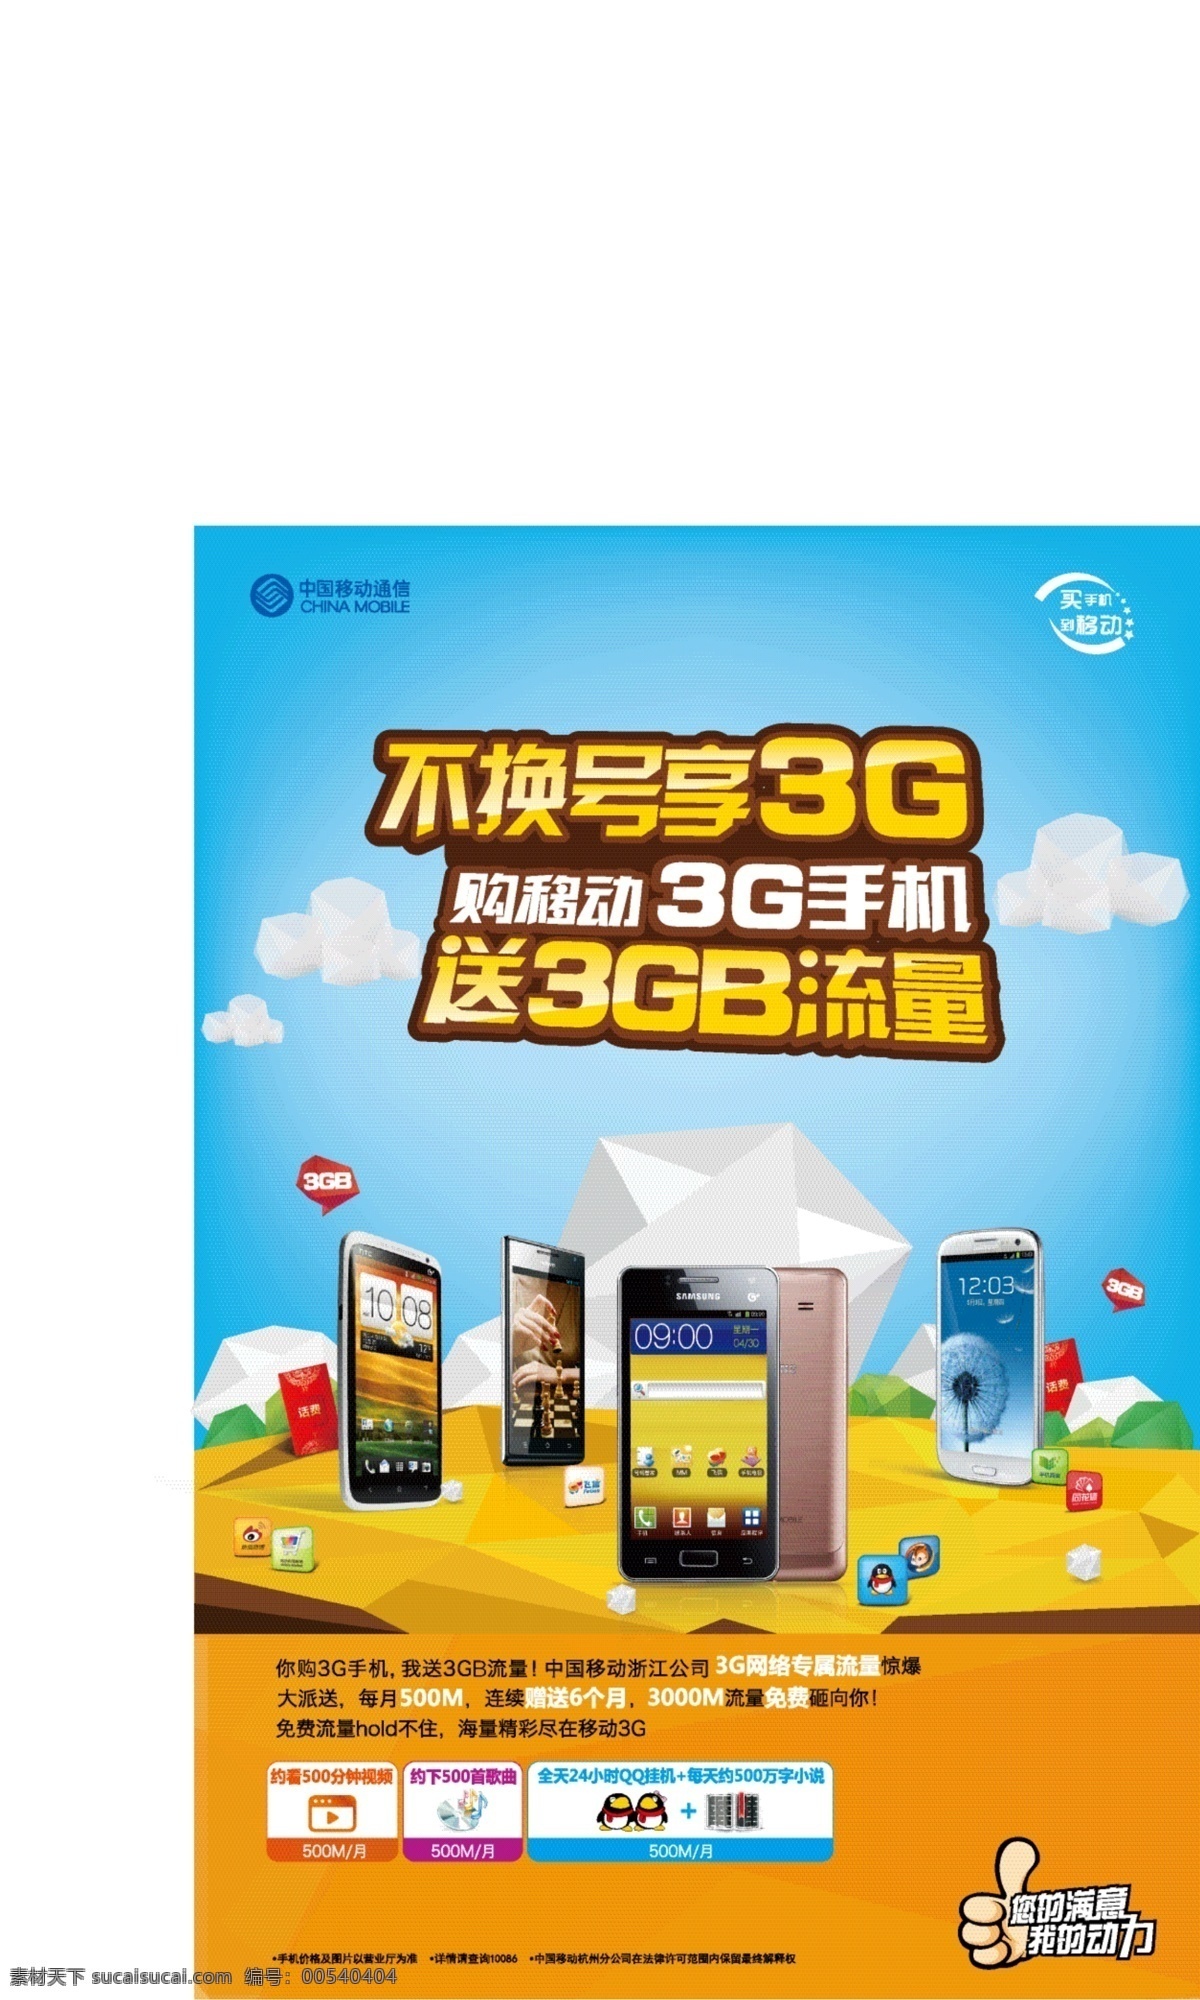 中国移动 海报 3g logo 橘色 蓝色 手机 移动 中国移动海报 矢量 其他海报设计